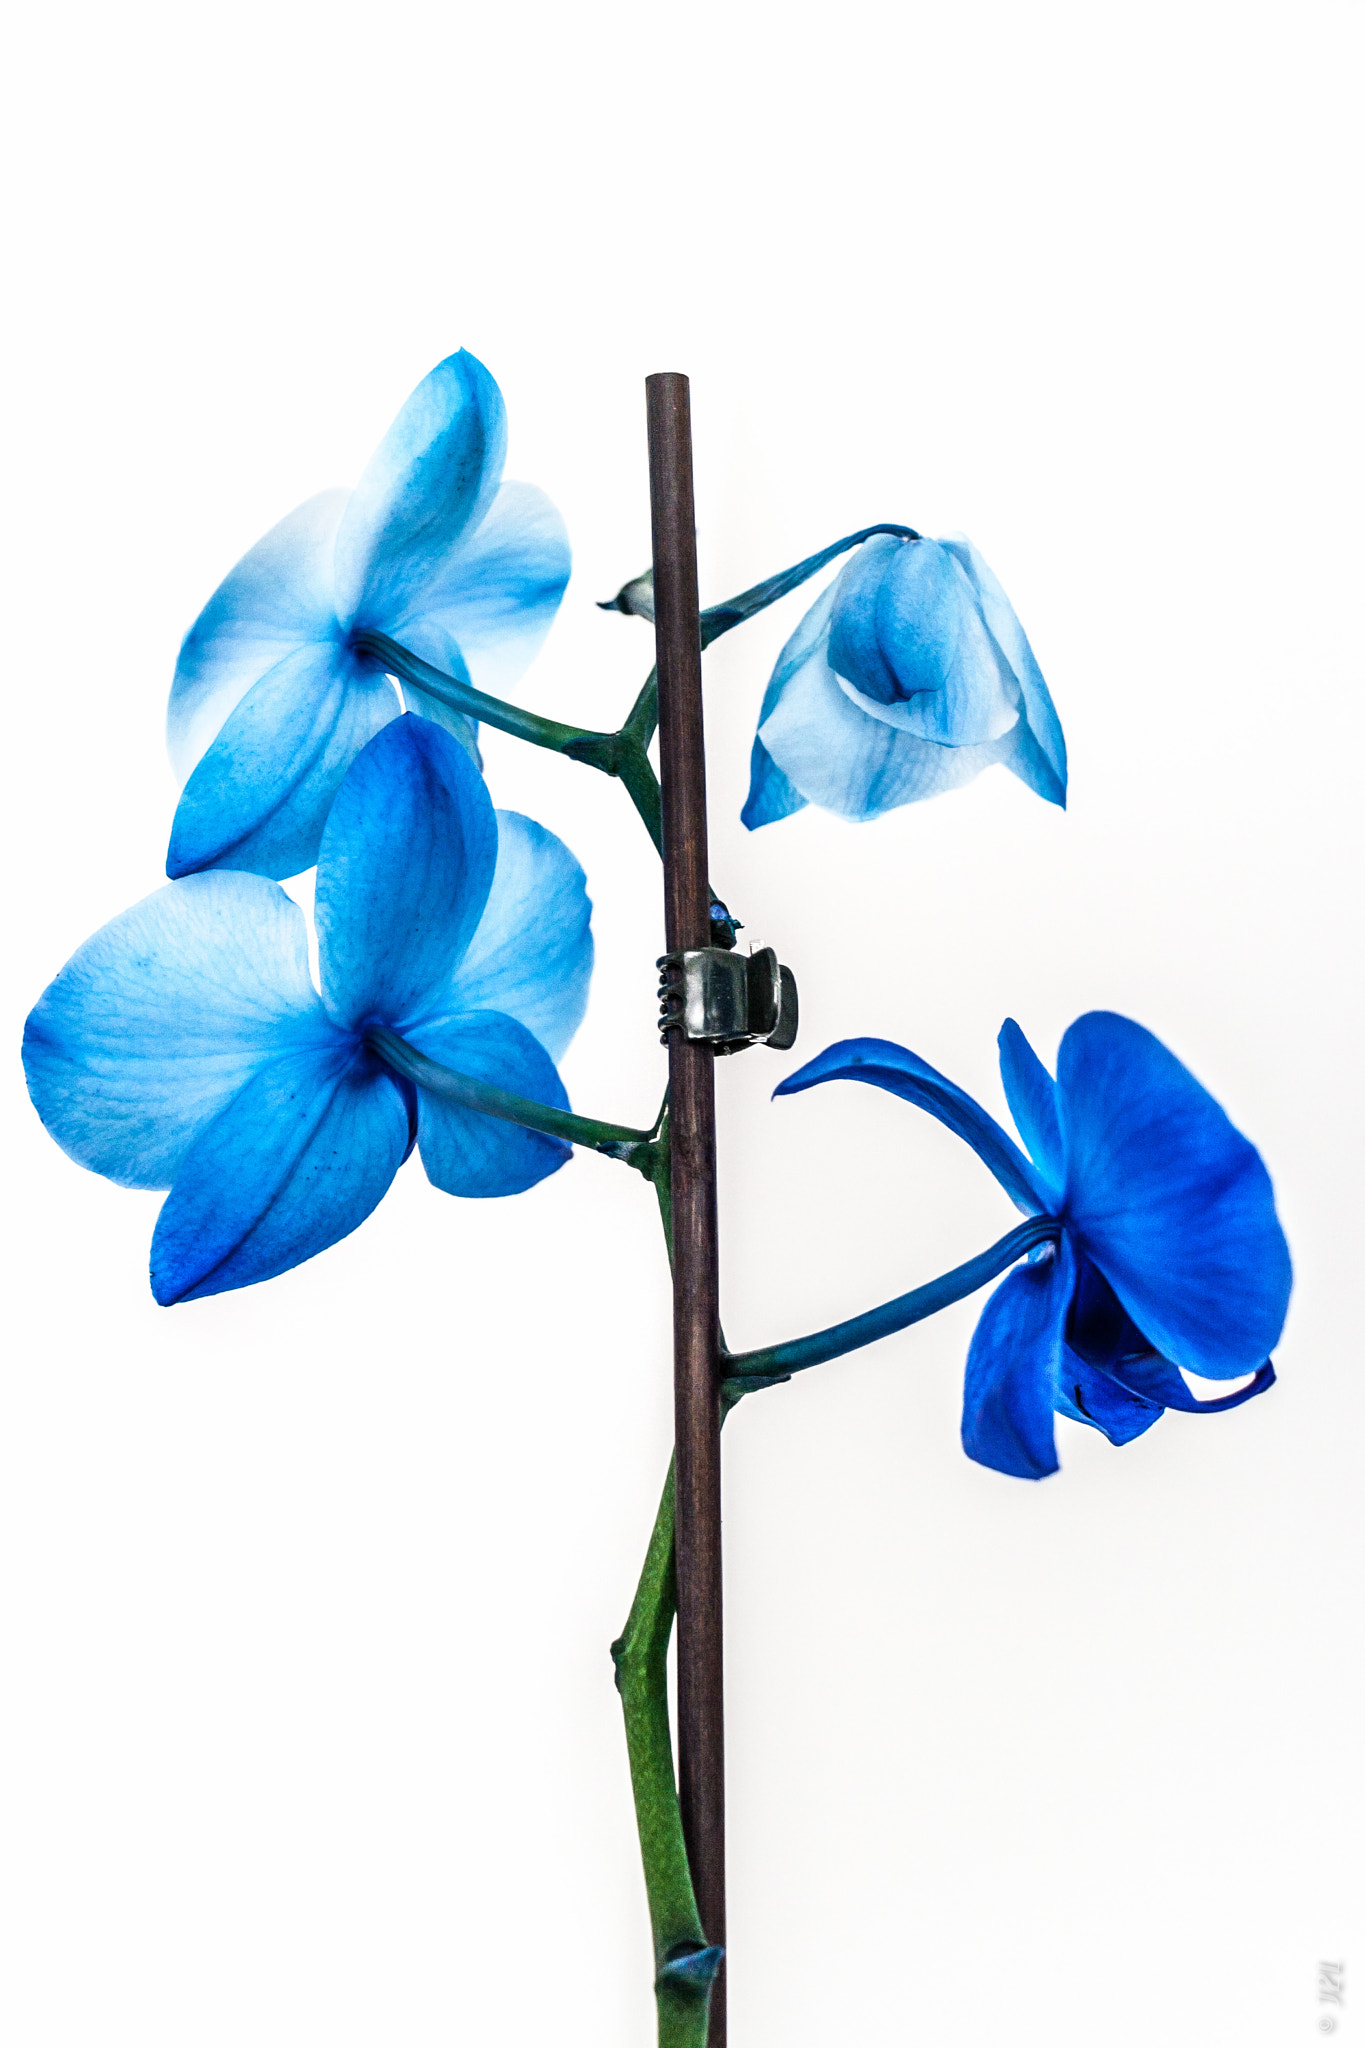 Canon EOS 400D (EOS Digital Rebel XTi / EOS Kiss Digital X) + Canon EF-S 18-135mm F3.5-5.6 IS STM sample photo. Végétaux - orchidée bleue - bleu orchid photography